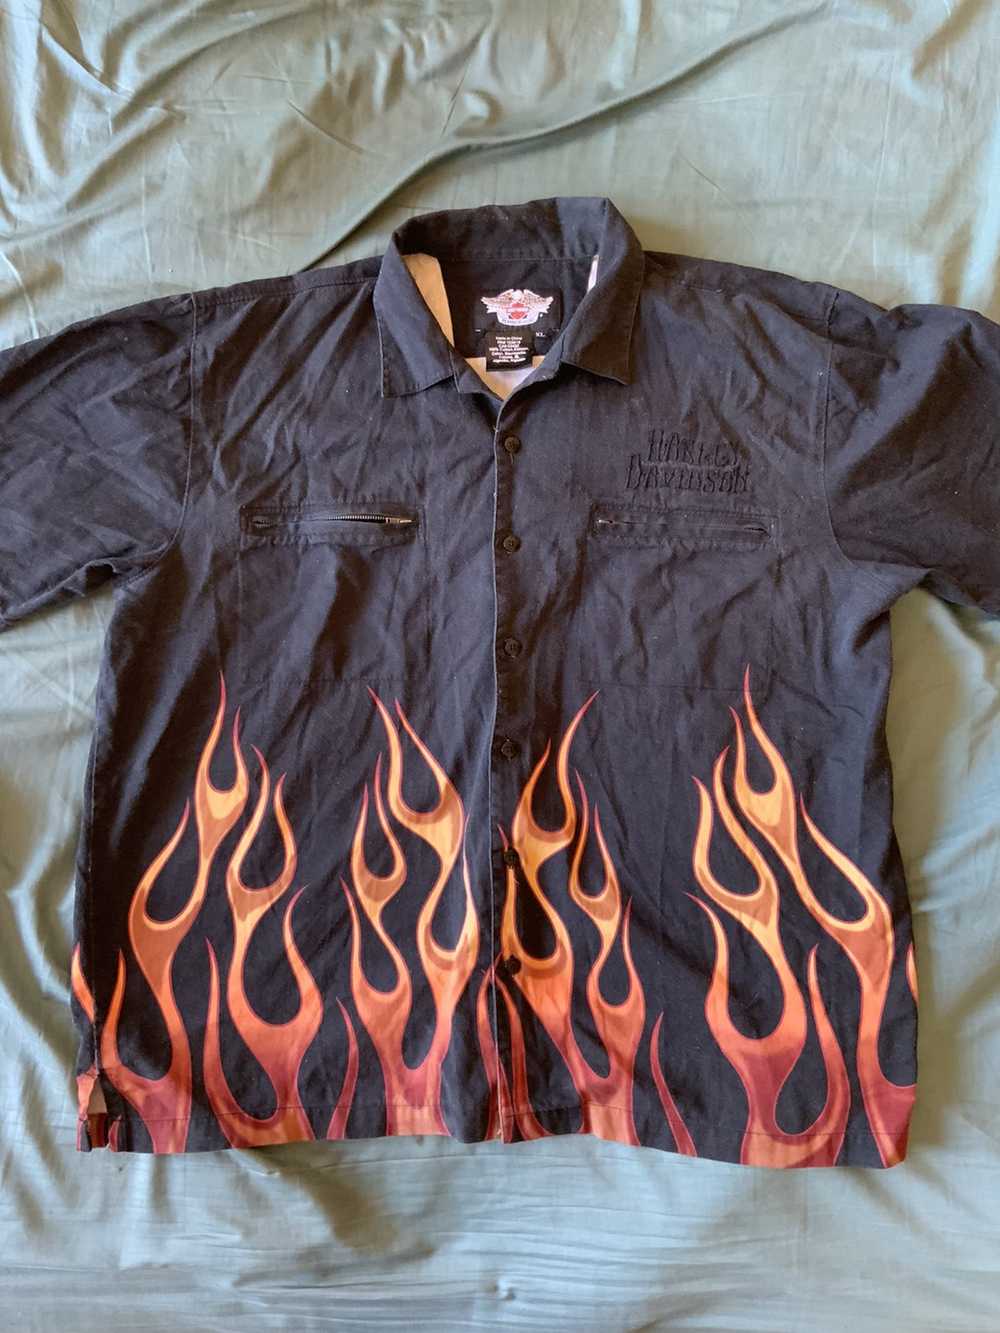 Flame shirt - Gem